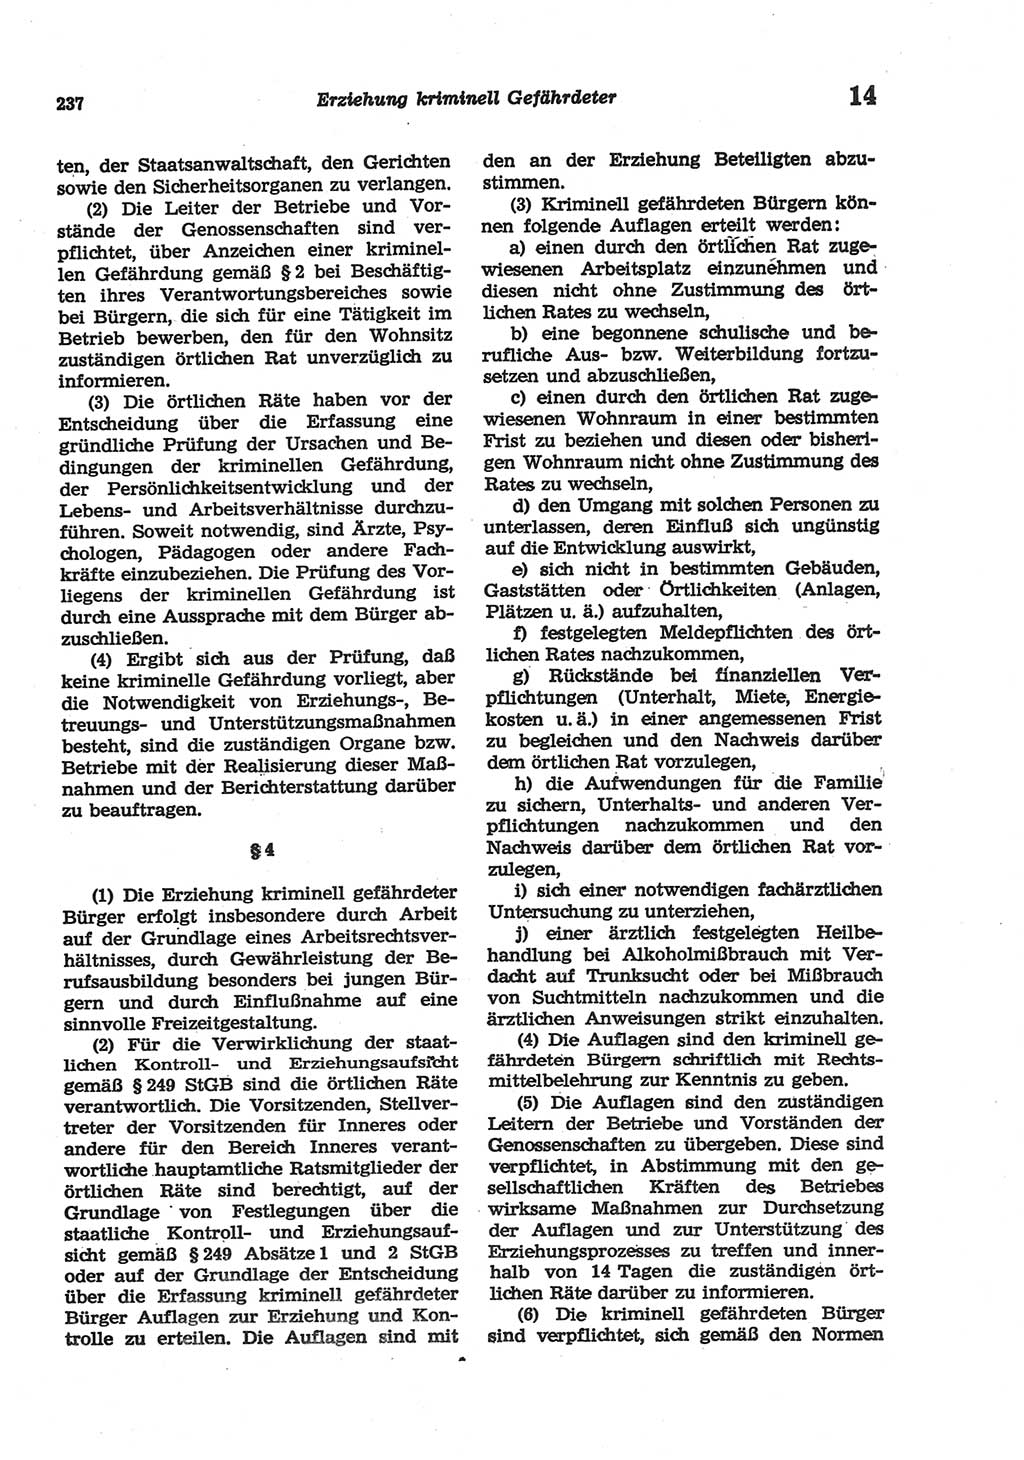 Strafgesetzbuch (StGB) der Deutschen Demokratischen Republik (DDR) und angrenzende Gesetze und Bestimmungen 1977, Seite 237 (StGB DDR Ges. Best. 1977, S. 237)